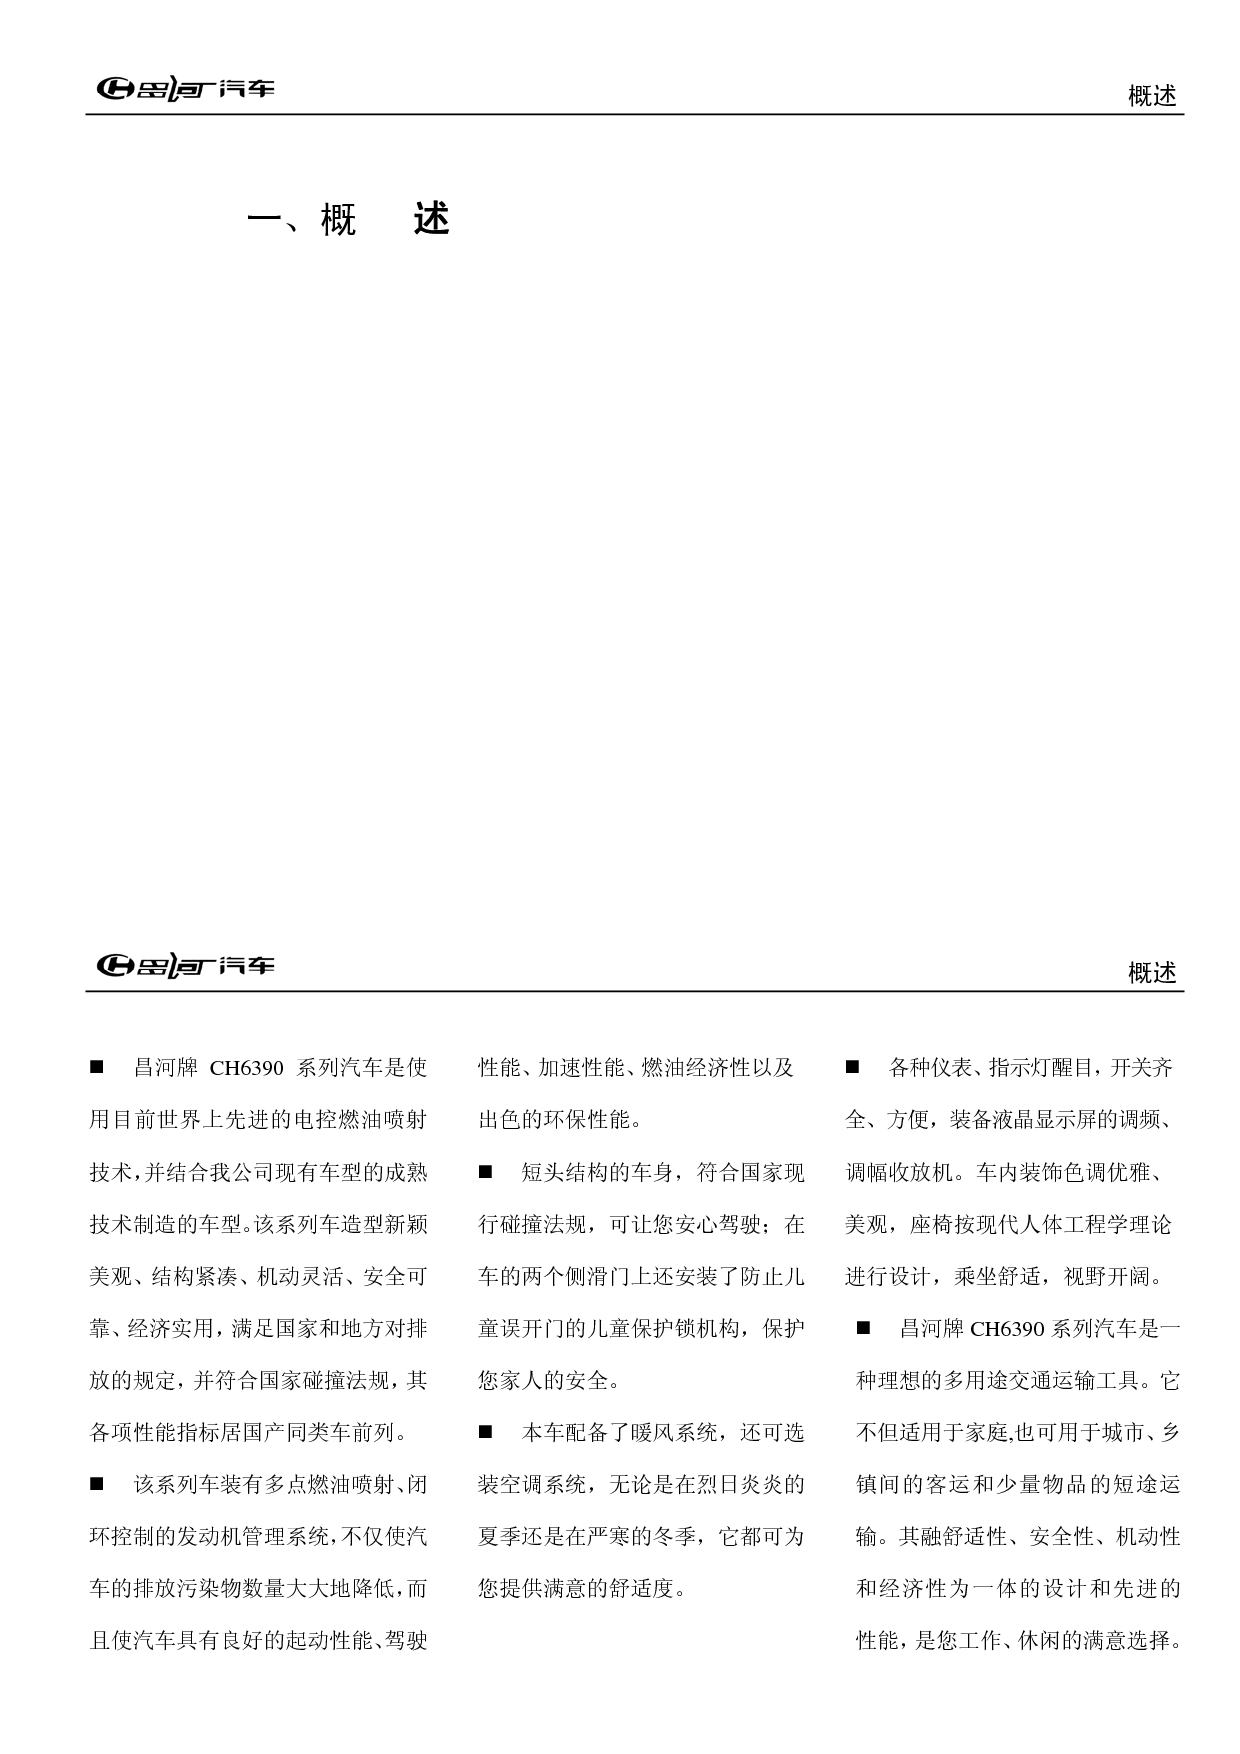 昌河 Changhe 福瑞达 CH6390 使用说明书 第2页